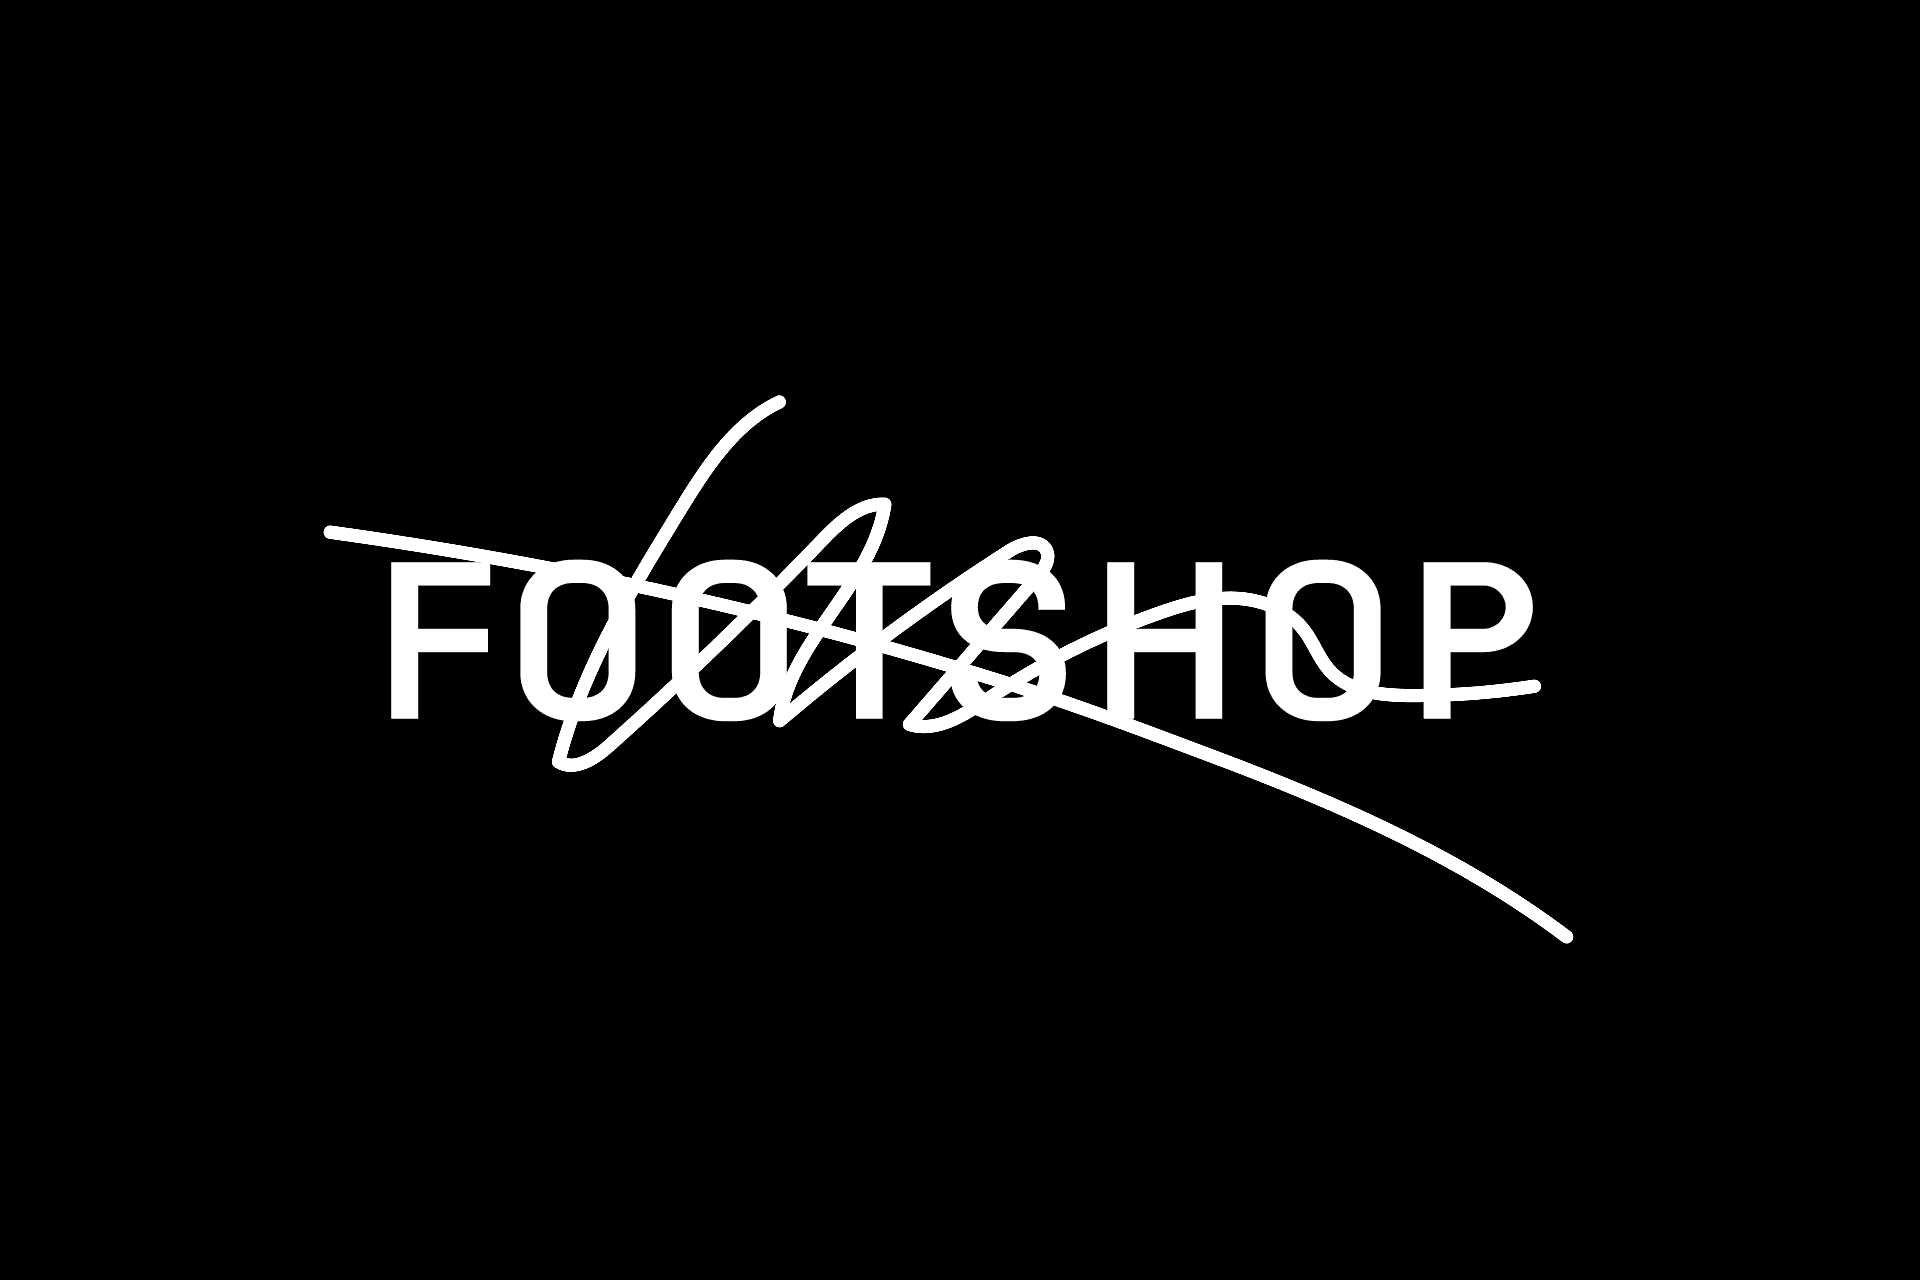 footshop_logo.gif